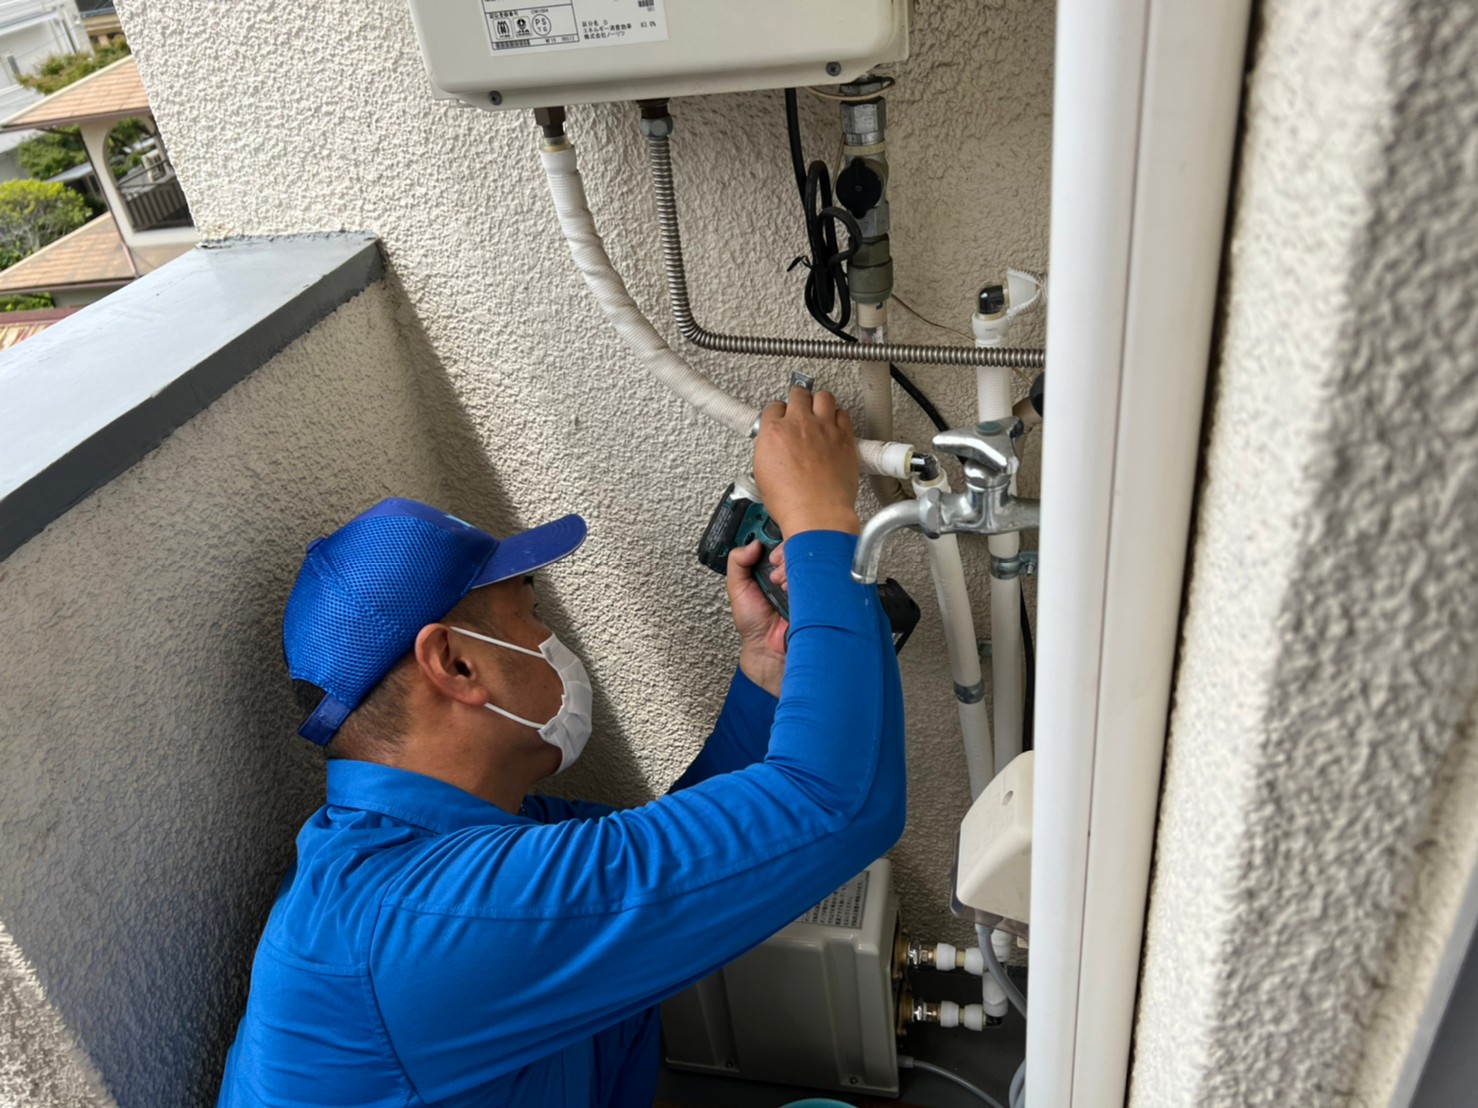 マンション 加圧ポンプ 据付け 家庭用給水ポンプ 取付け工事 神戸市 トラブラン